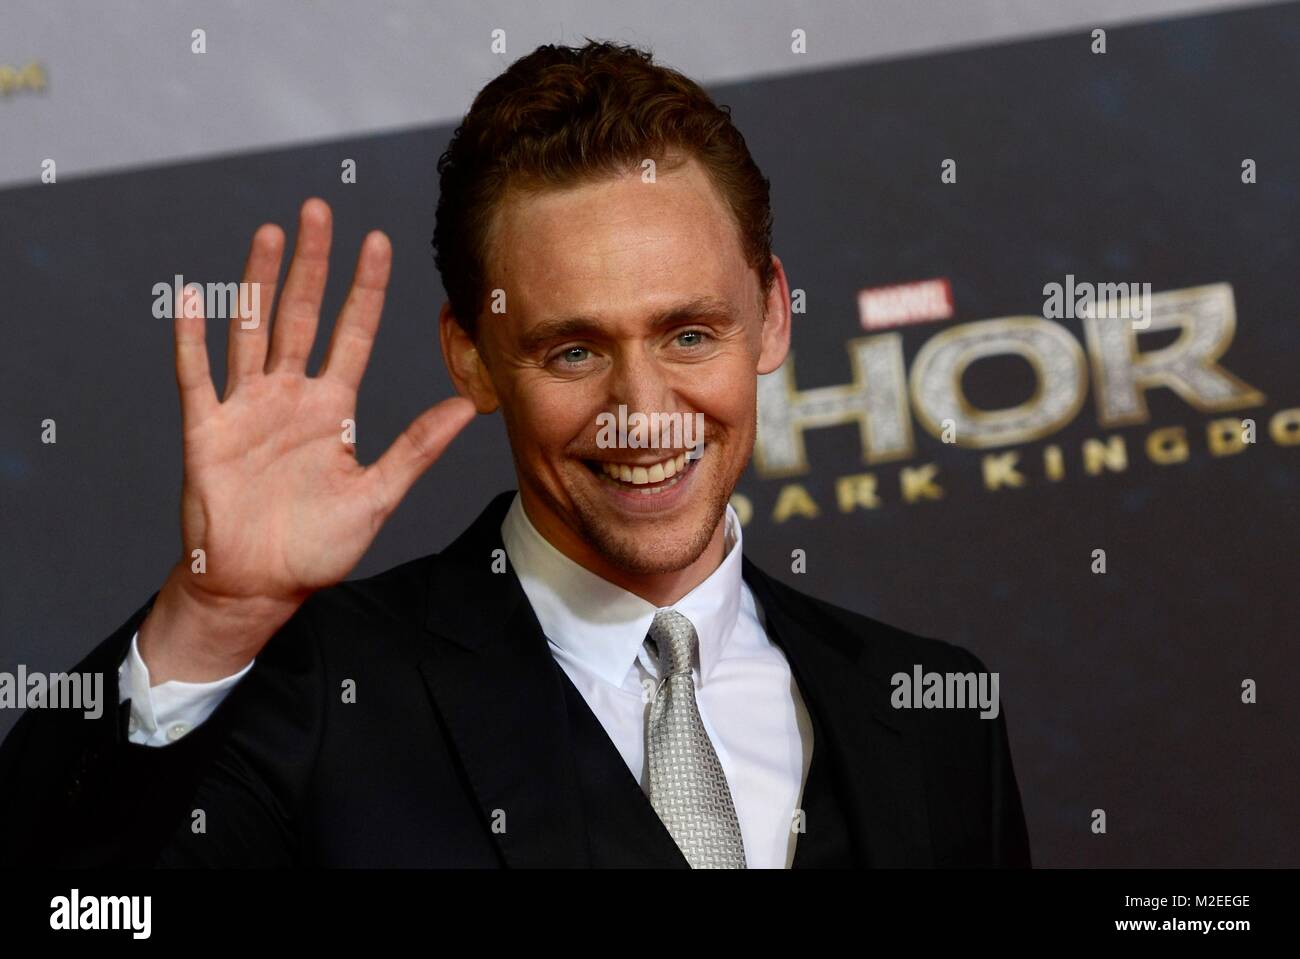 Tom Hiddleston bei der Deutschlandpremiere von "Thor - Il regno oscuro' Cine imStar-Kino im SonyCenter in Berlin am 27.10.2013 Foto Stock